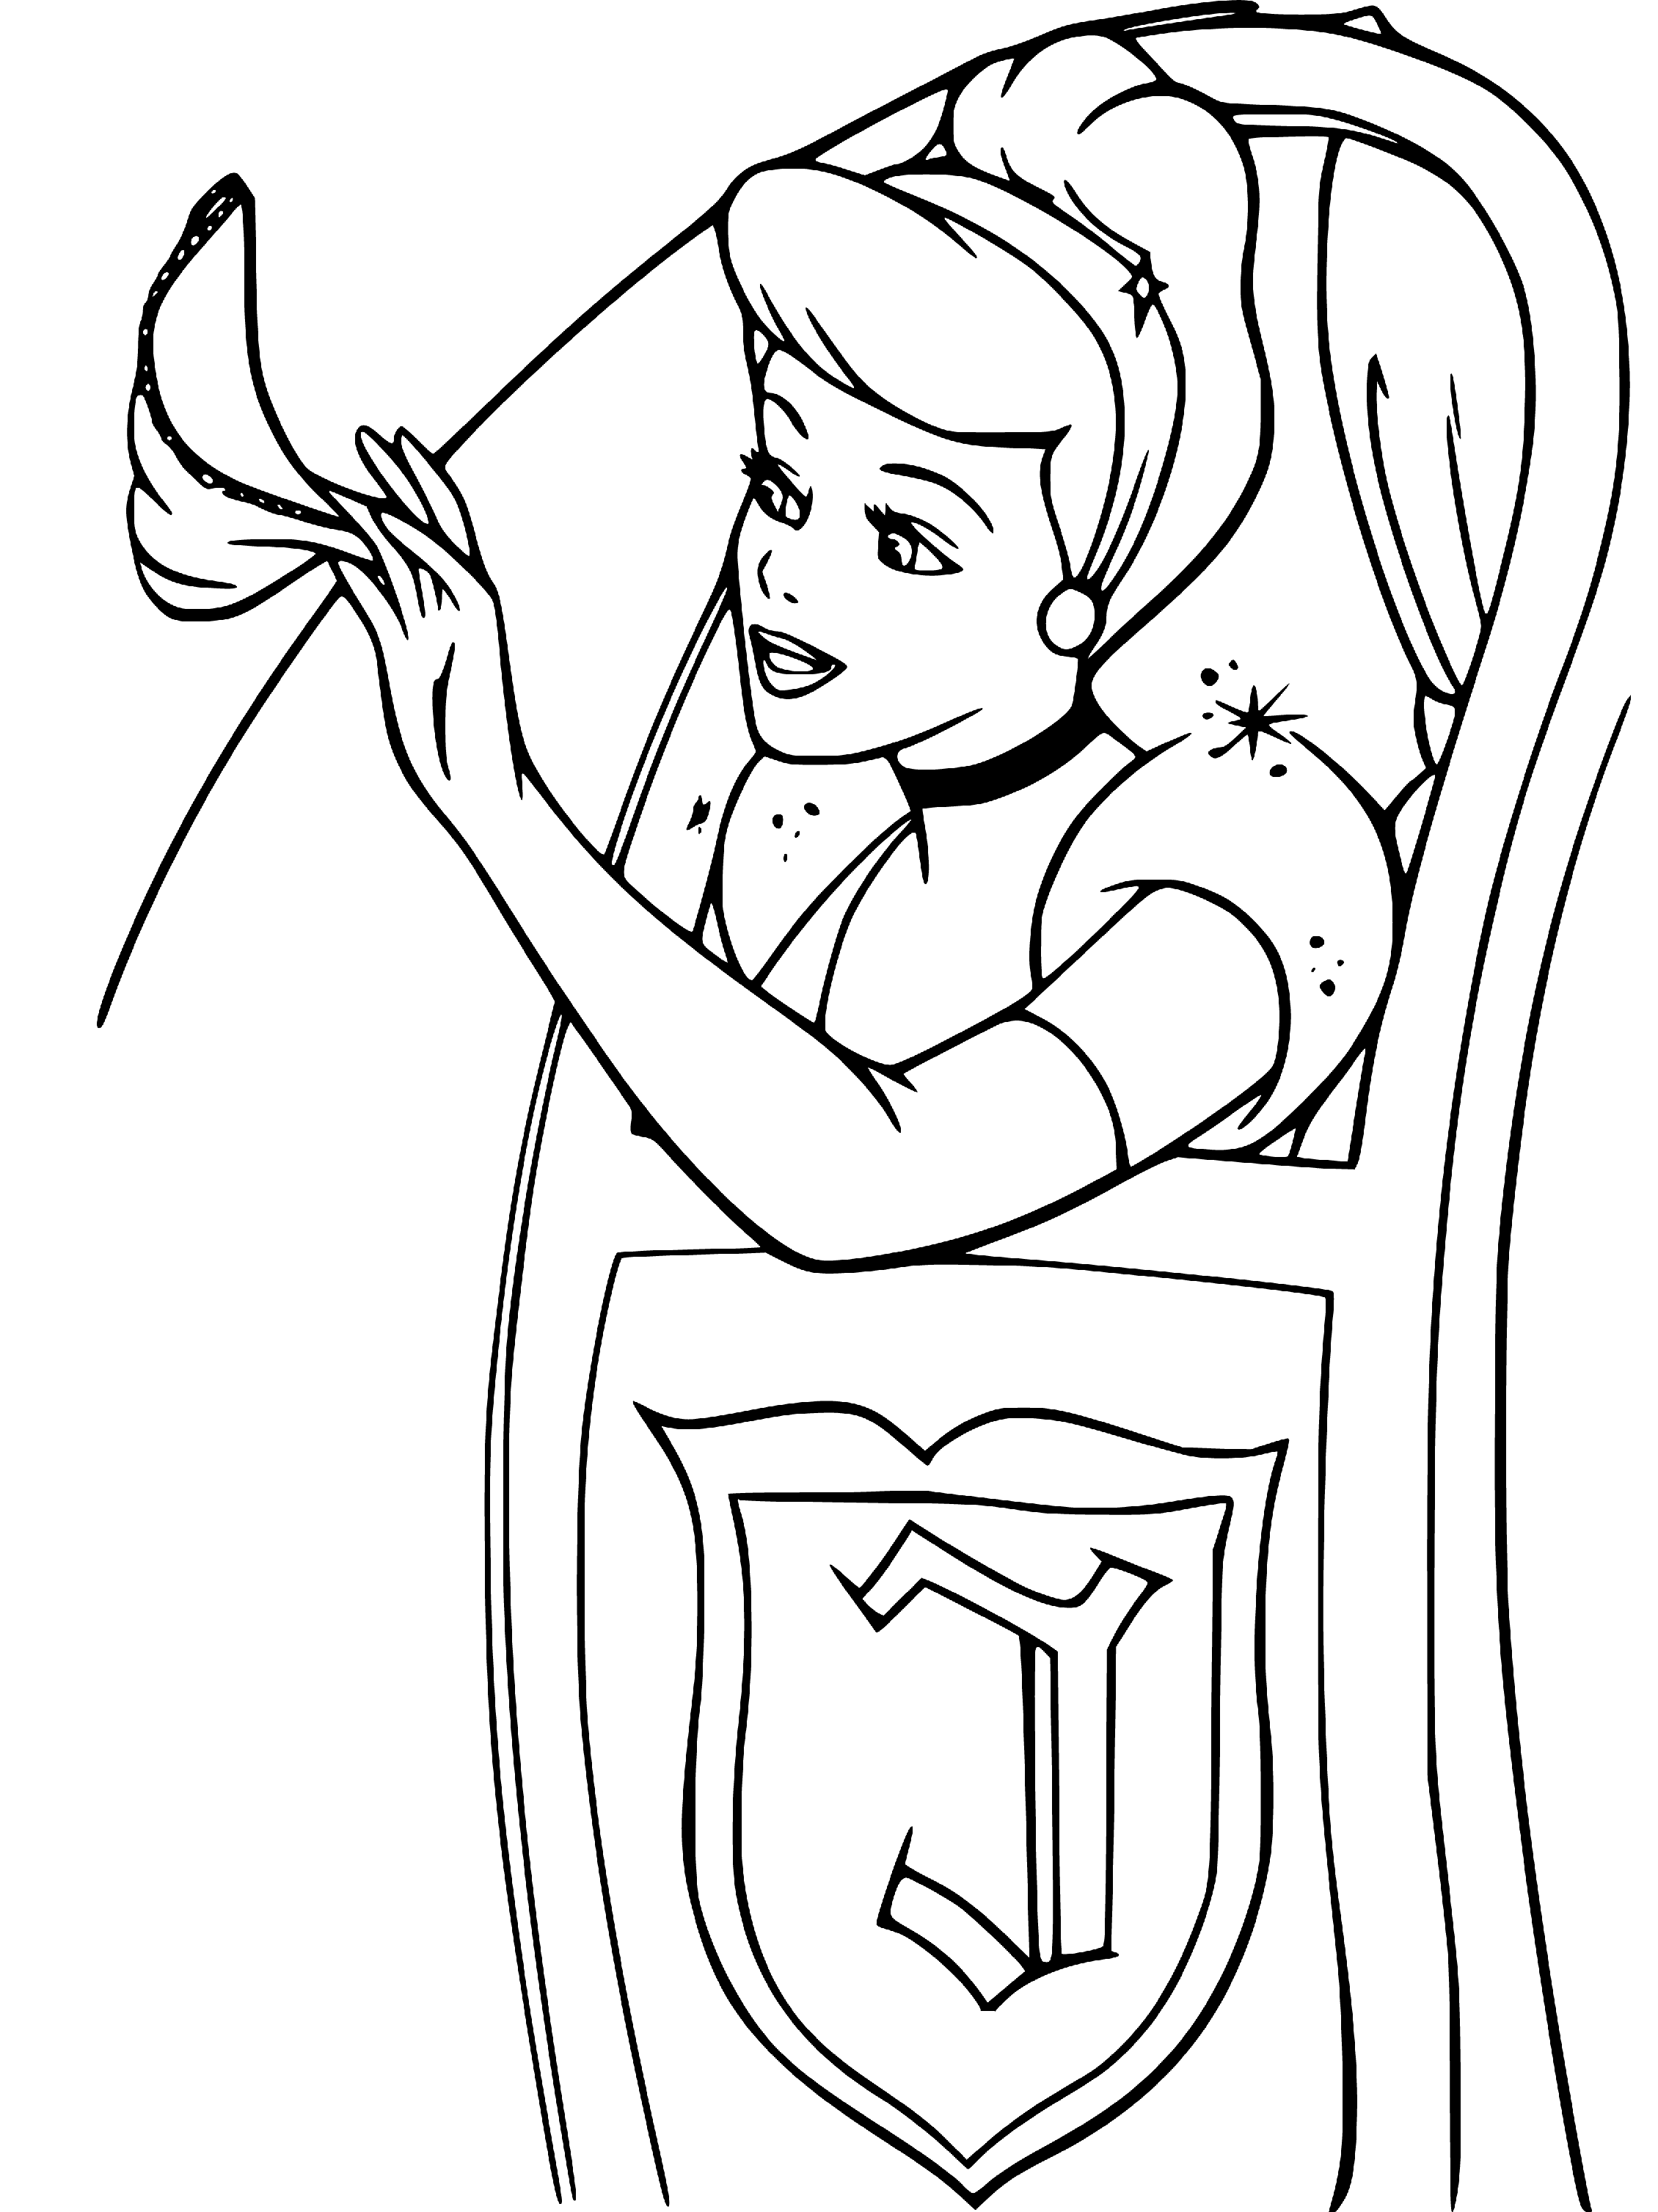 Cinderella Sketching to Color - SheetalColor.com